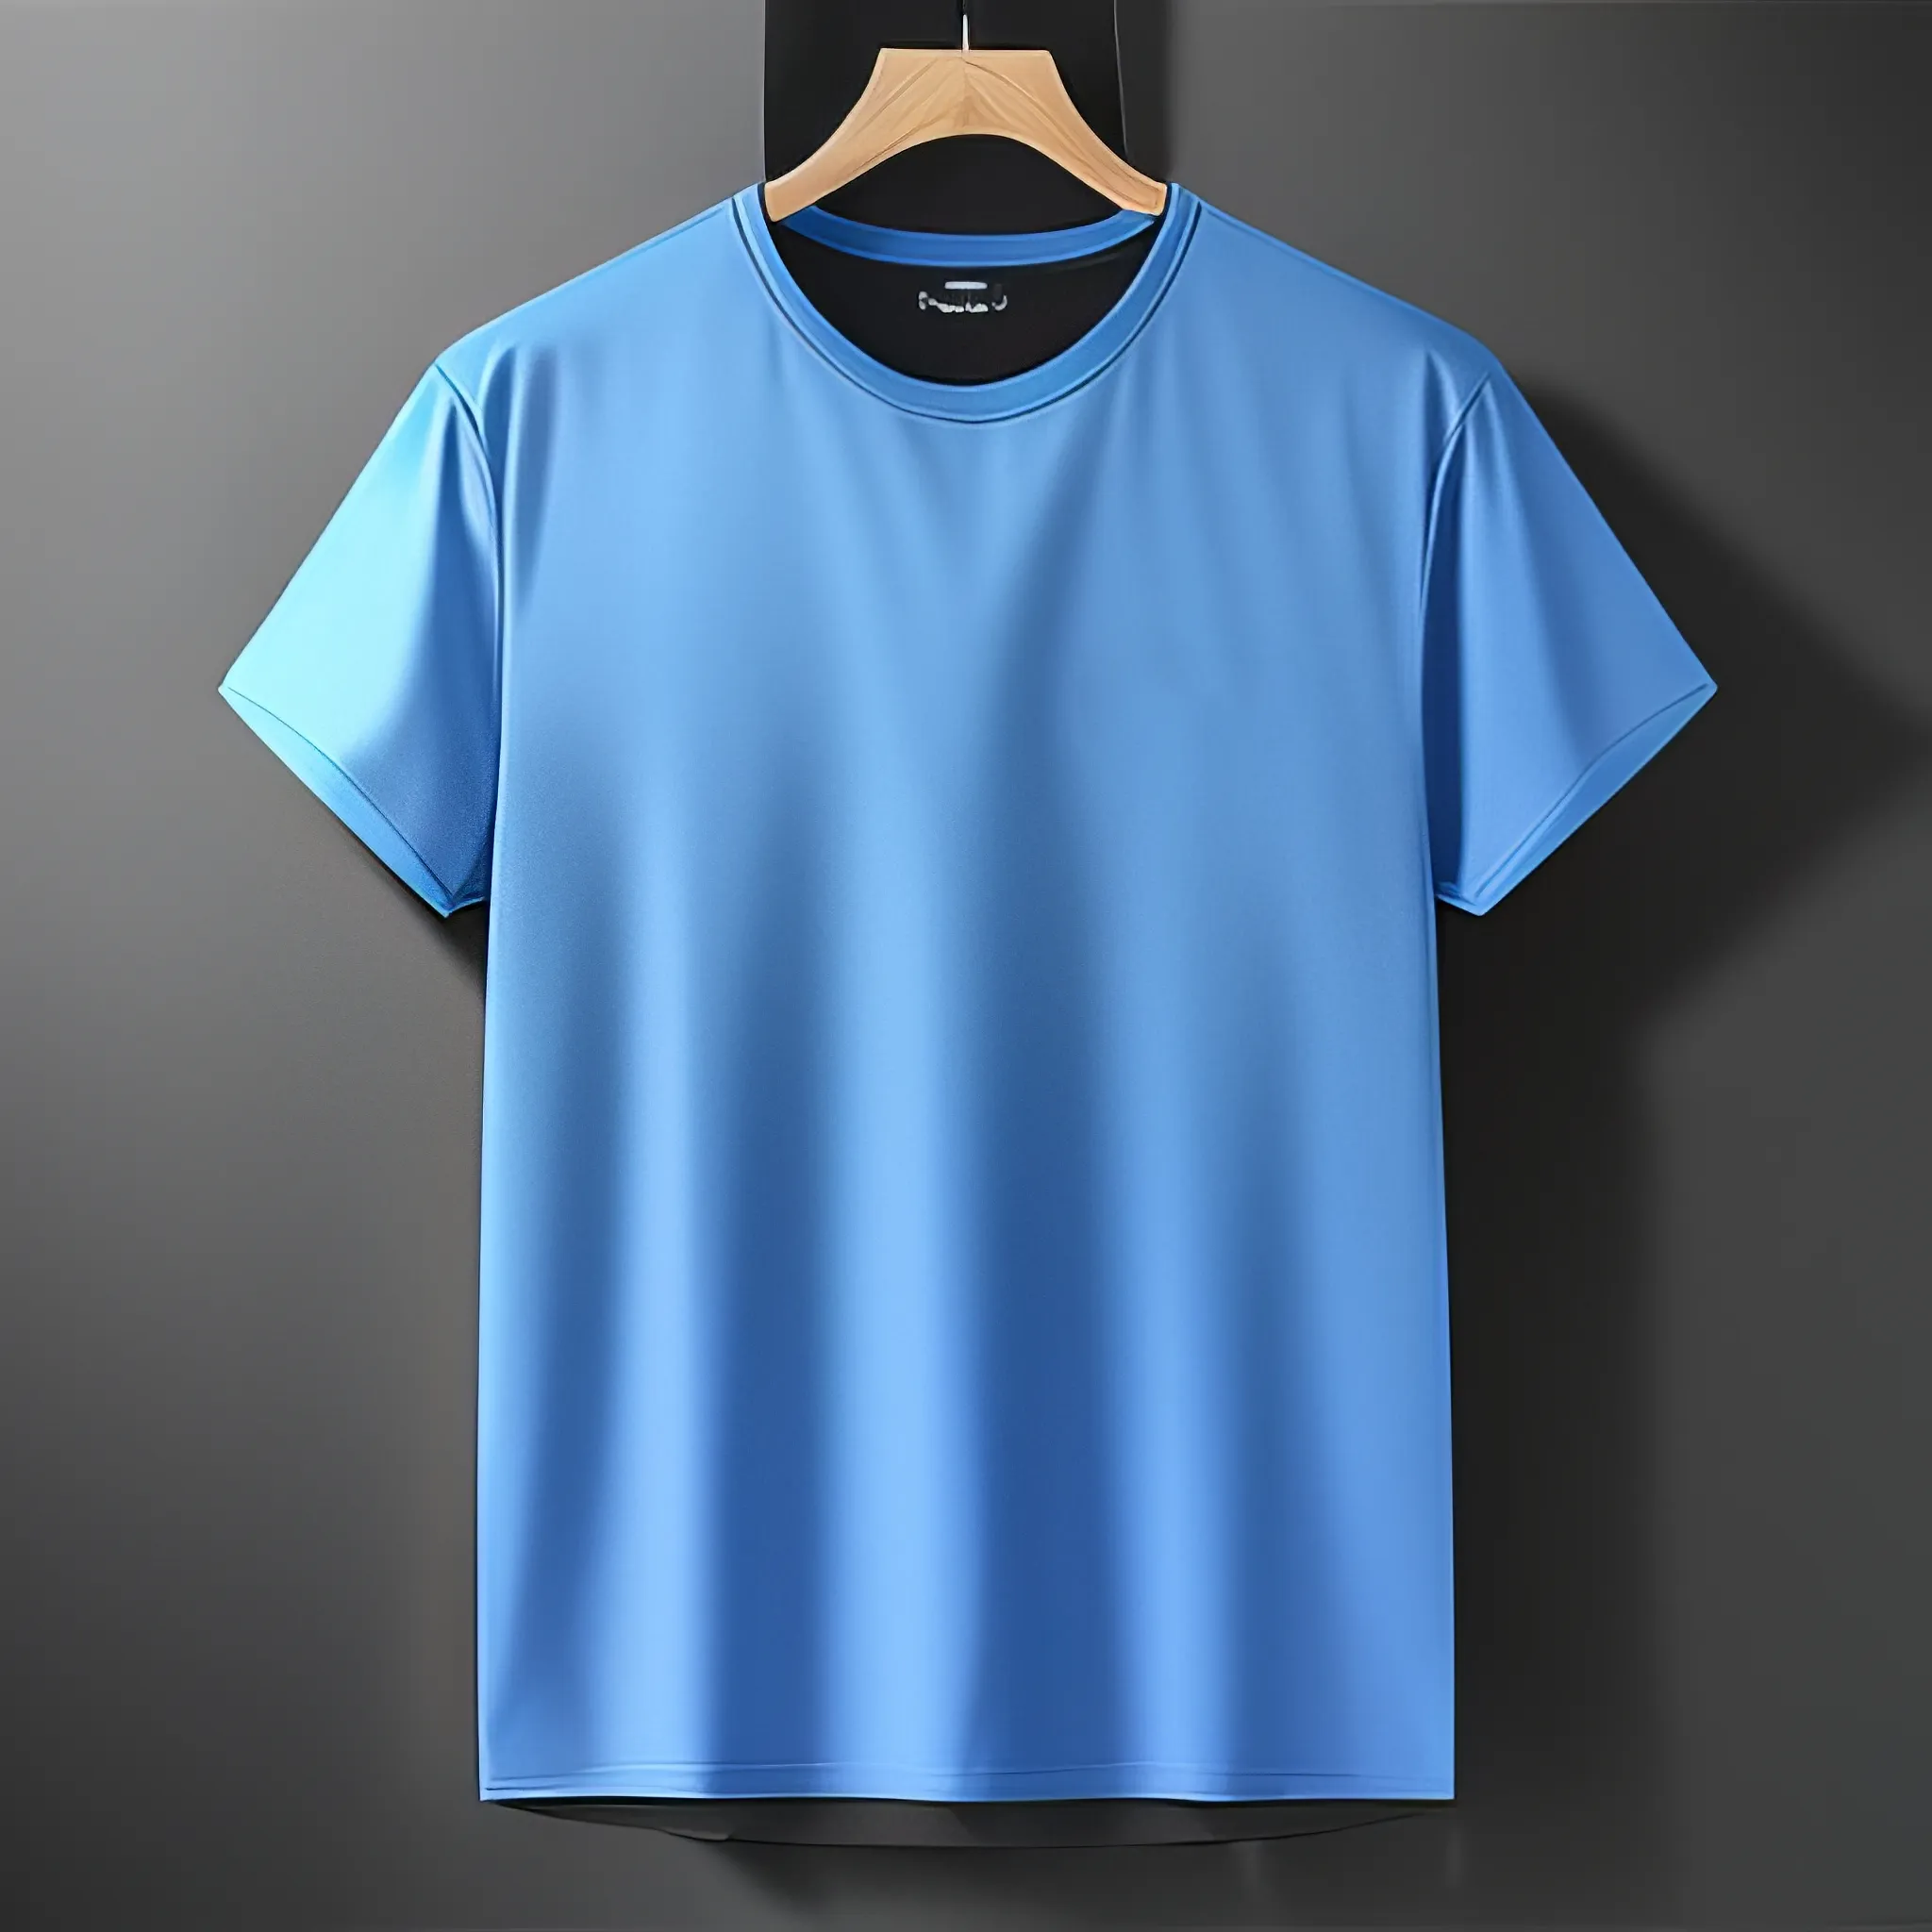 도매 이상 실행 T 셔츠 방글라데시 사용자 정의 디자인 O-넥 하이 퀄리티 방글라데시 의류 재고 공급 업체 브랜드